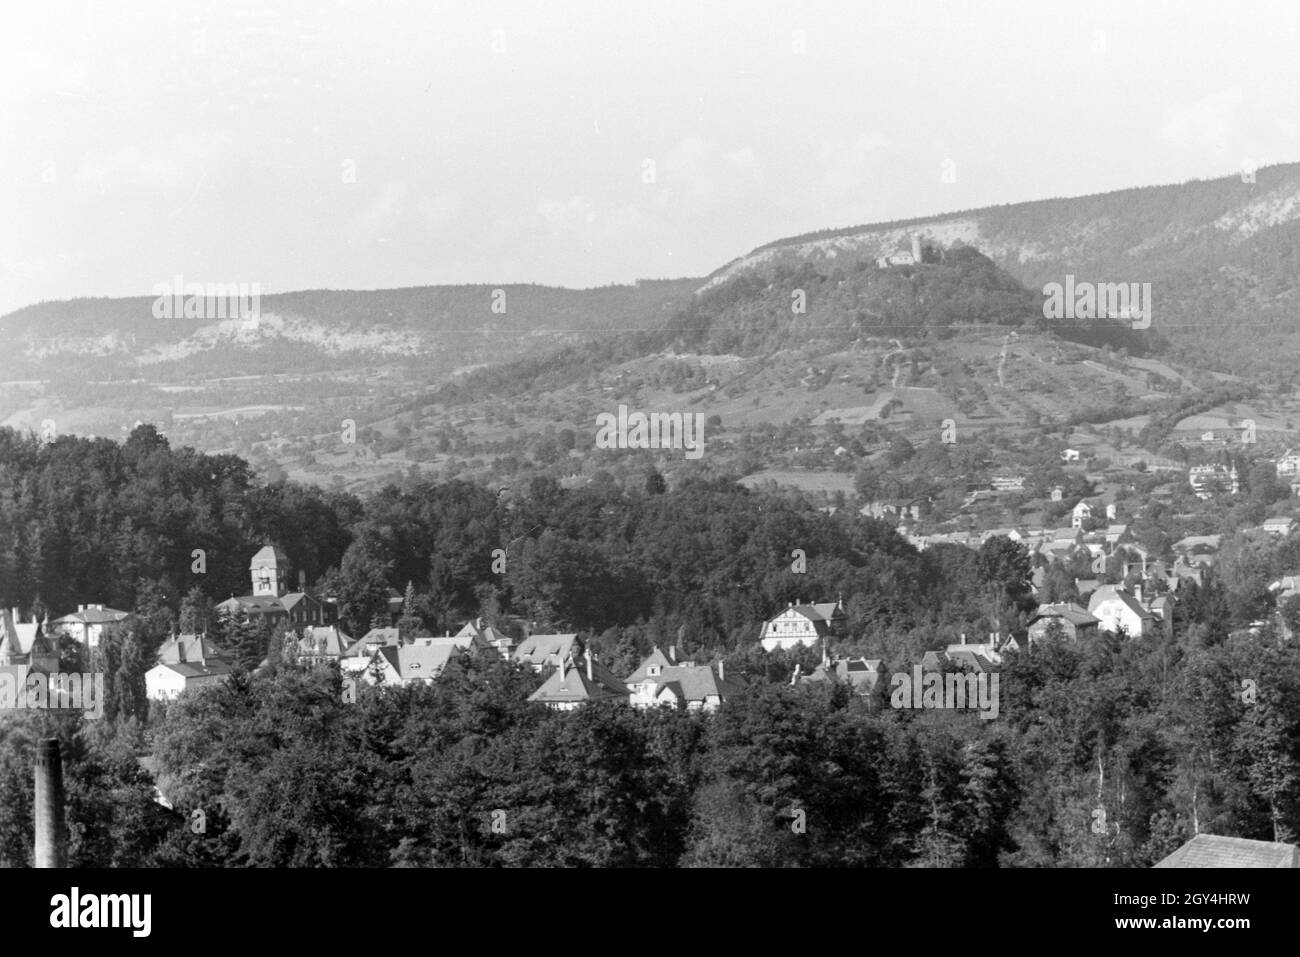 Die Aussicht auf das Schwarzatal bei Bad Blankenburg, Deutschland 1930er Jahre. La vista sulla Valle Schwarza nei pressi di Bad Blankenburg, Germania 1930s. Foto Stock